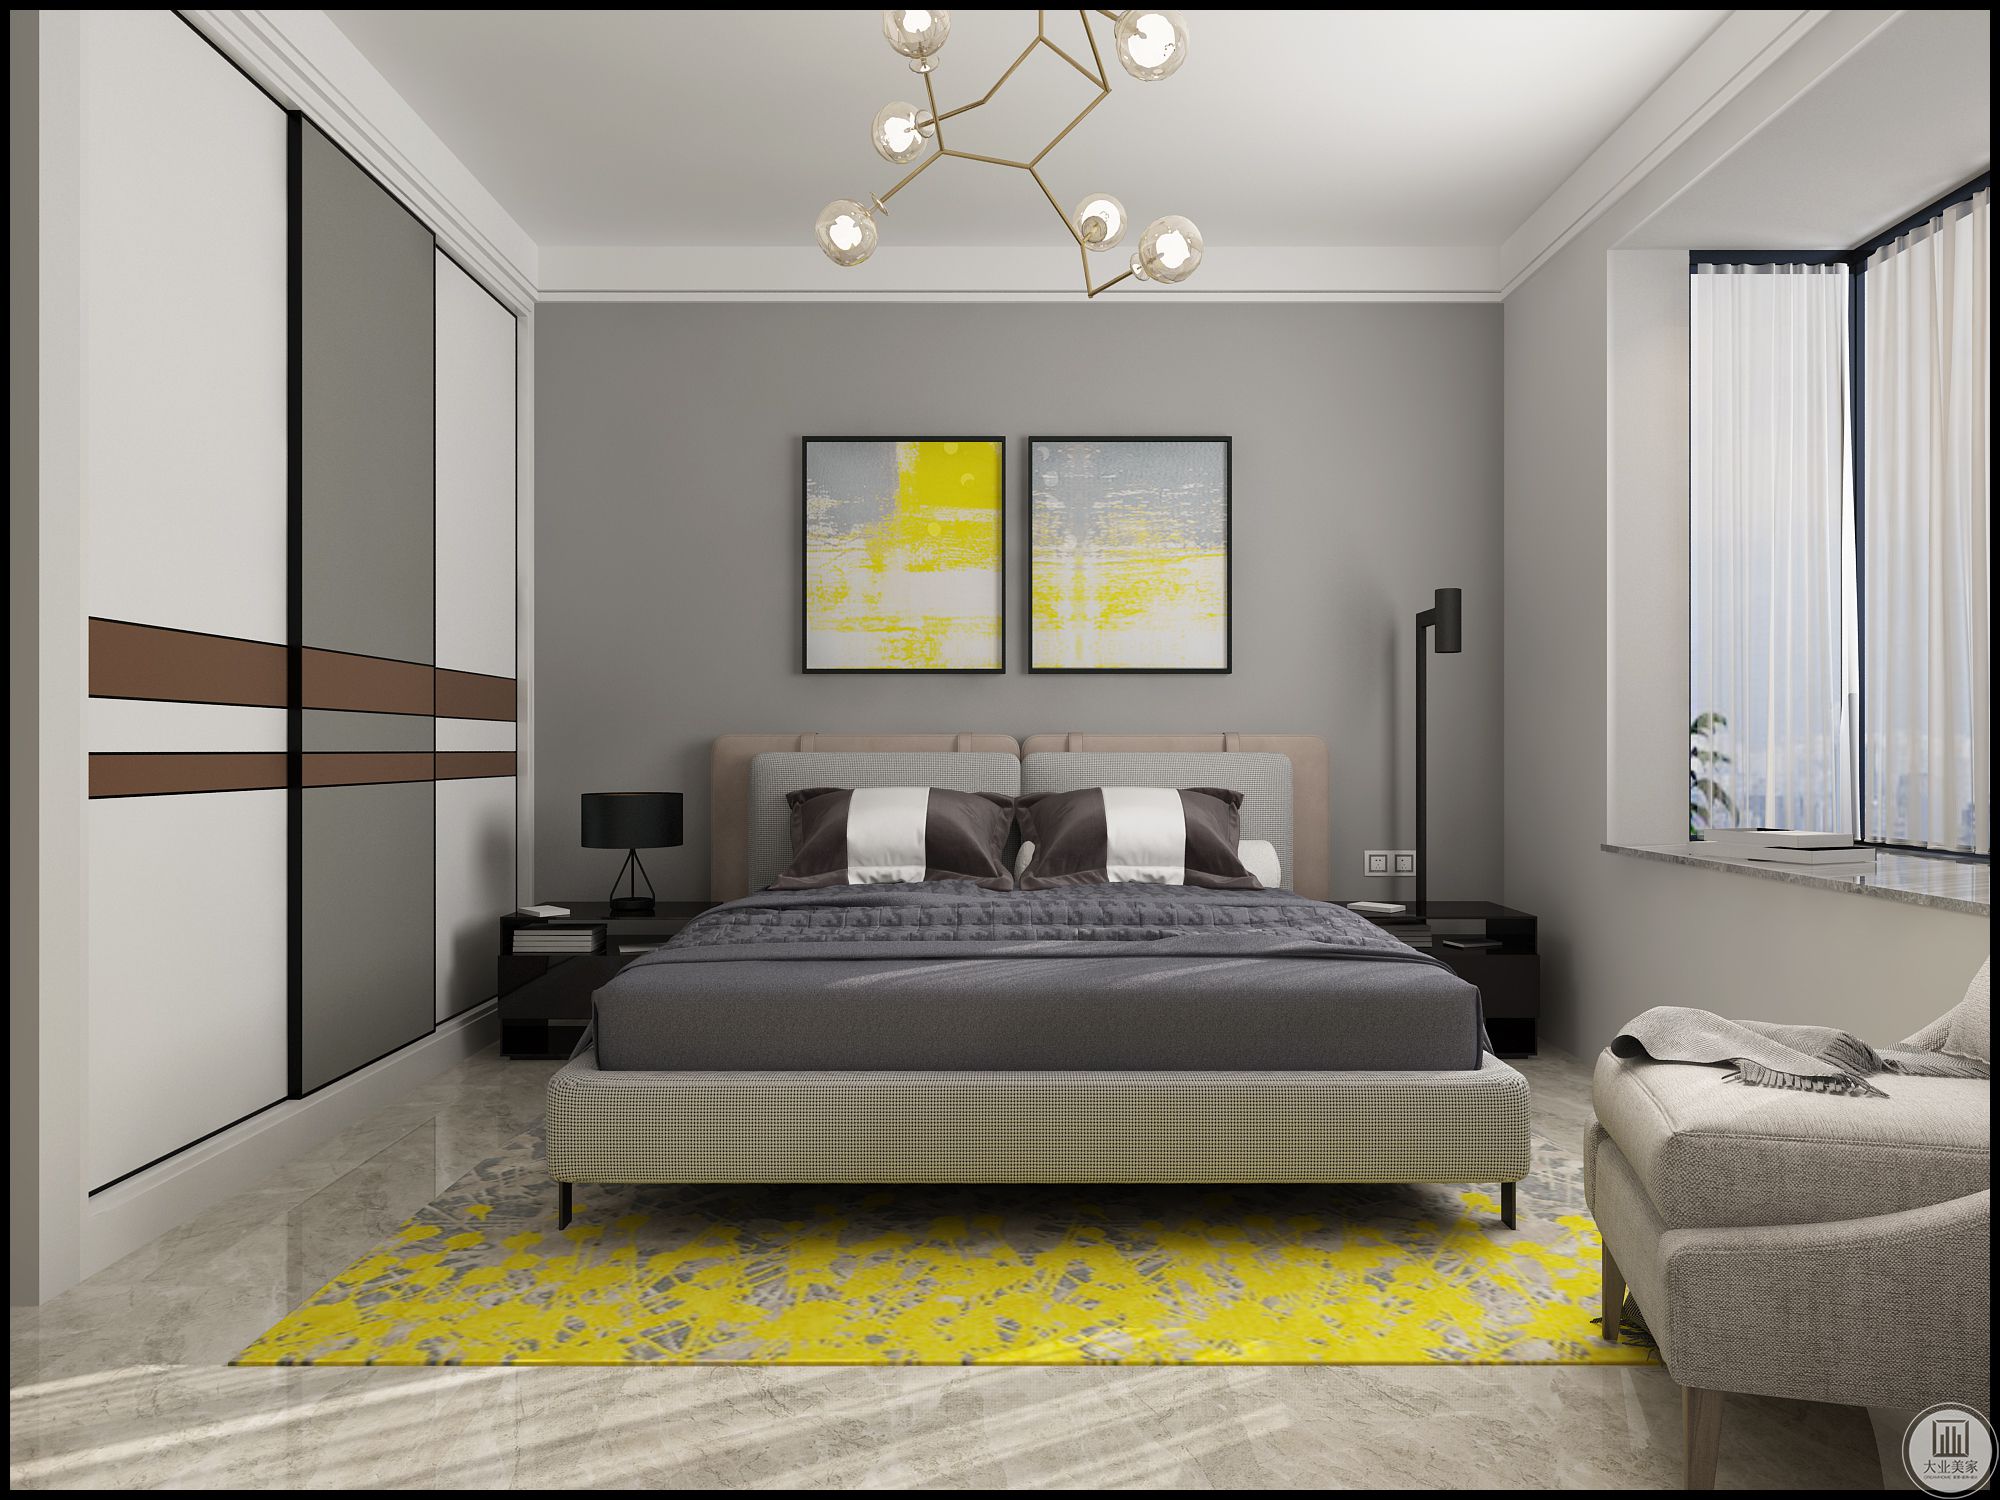 卧室遵循的是黑白灰的延续，没有做吊顶，用的是简洁的平板线，背景是灰色系壁纸。给人简约时尚的感觉。